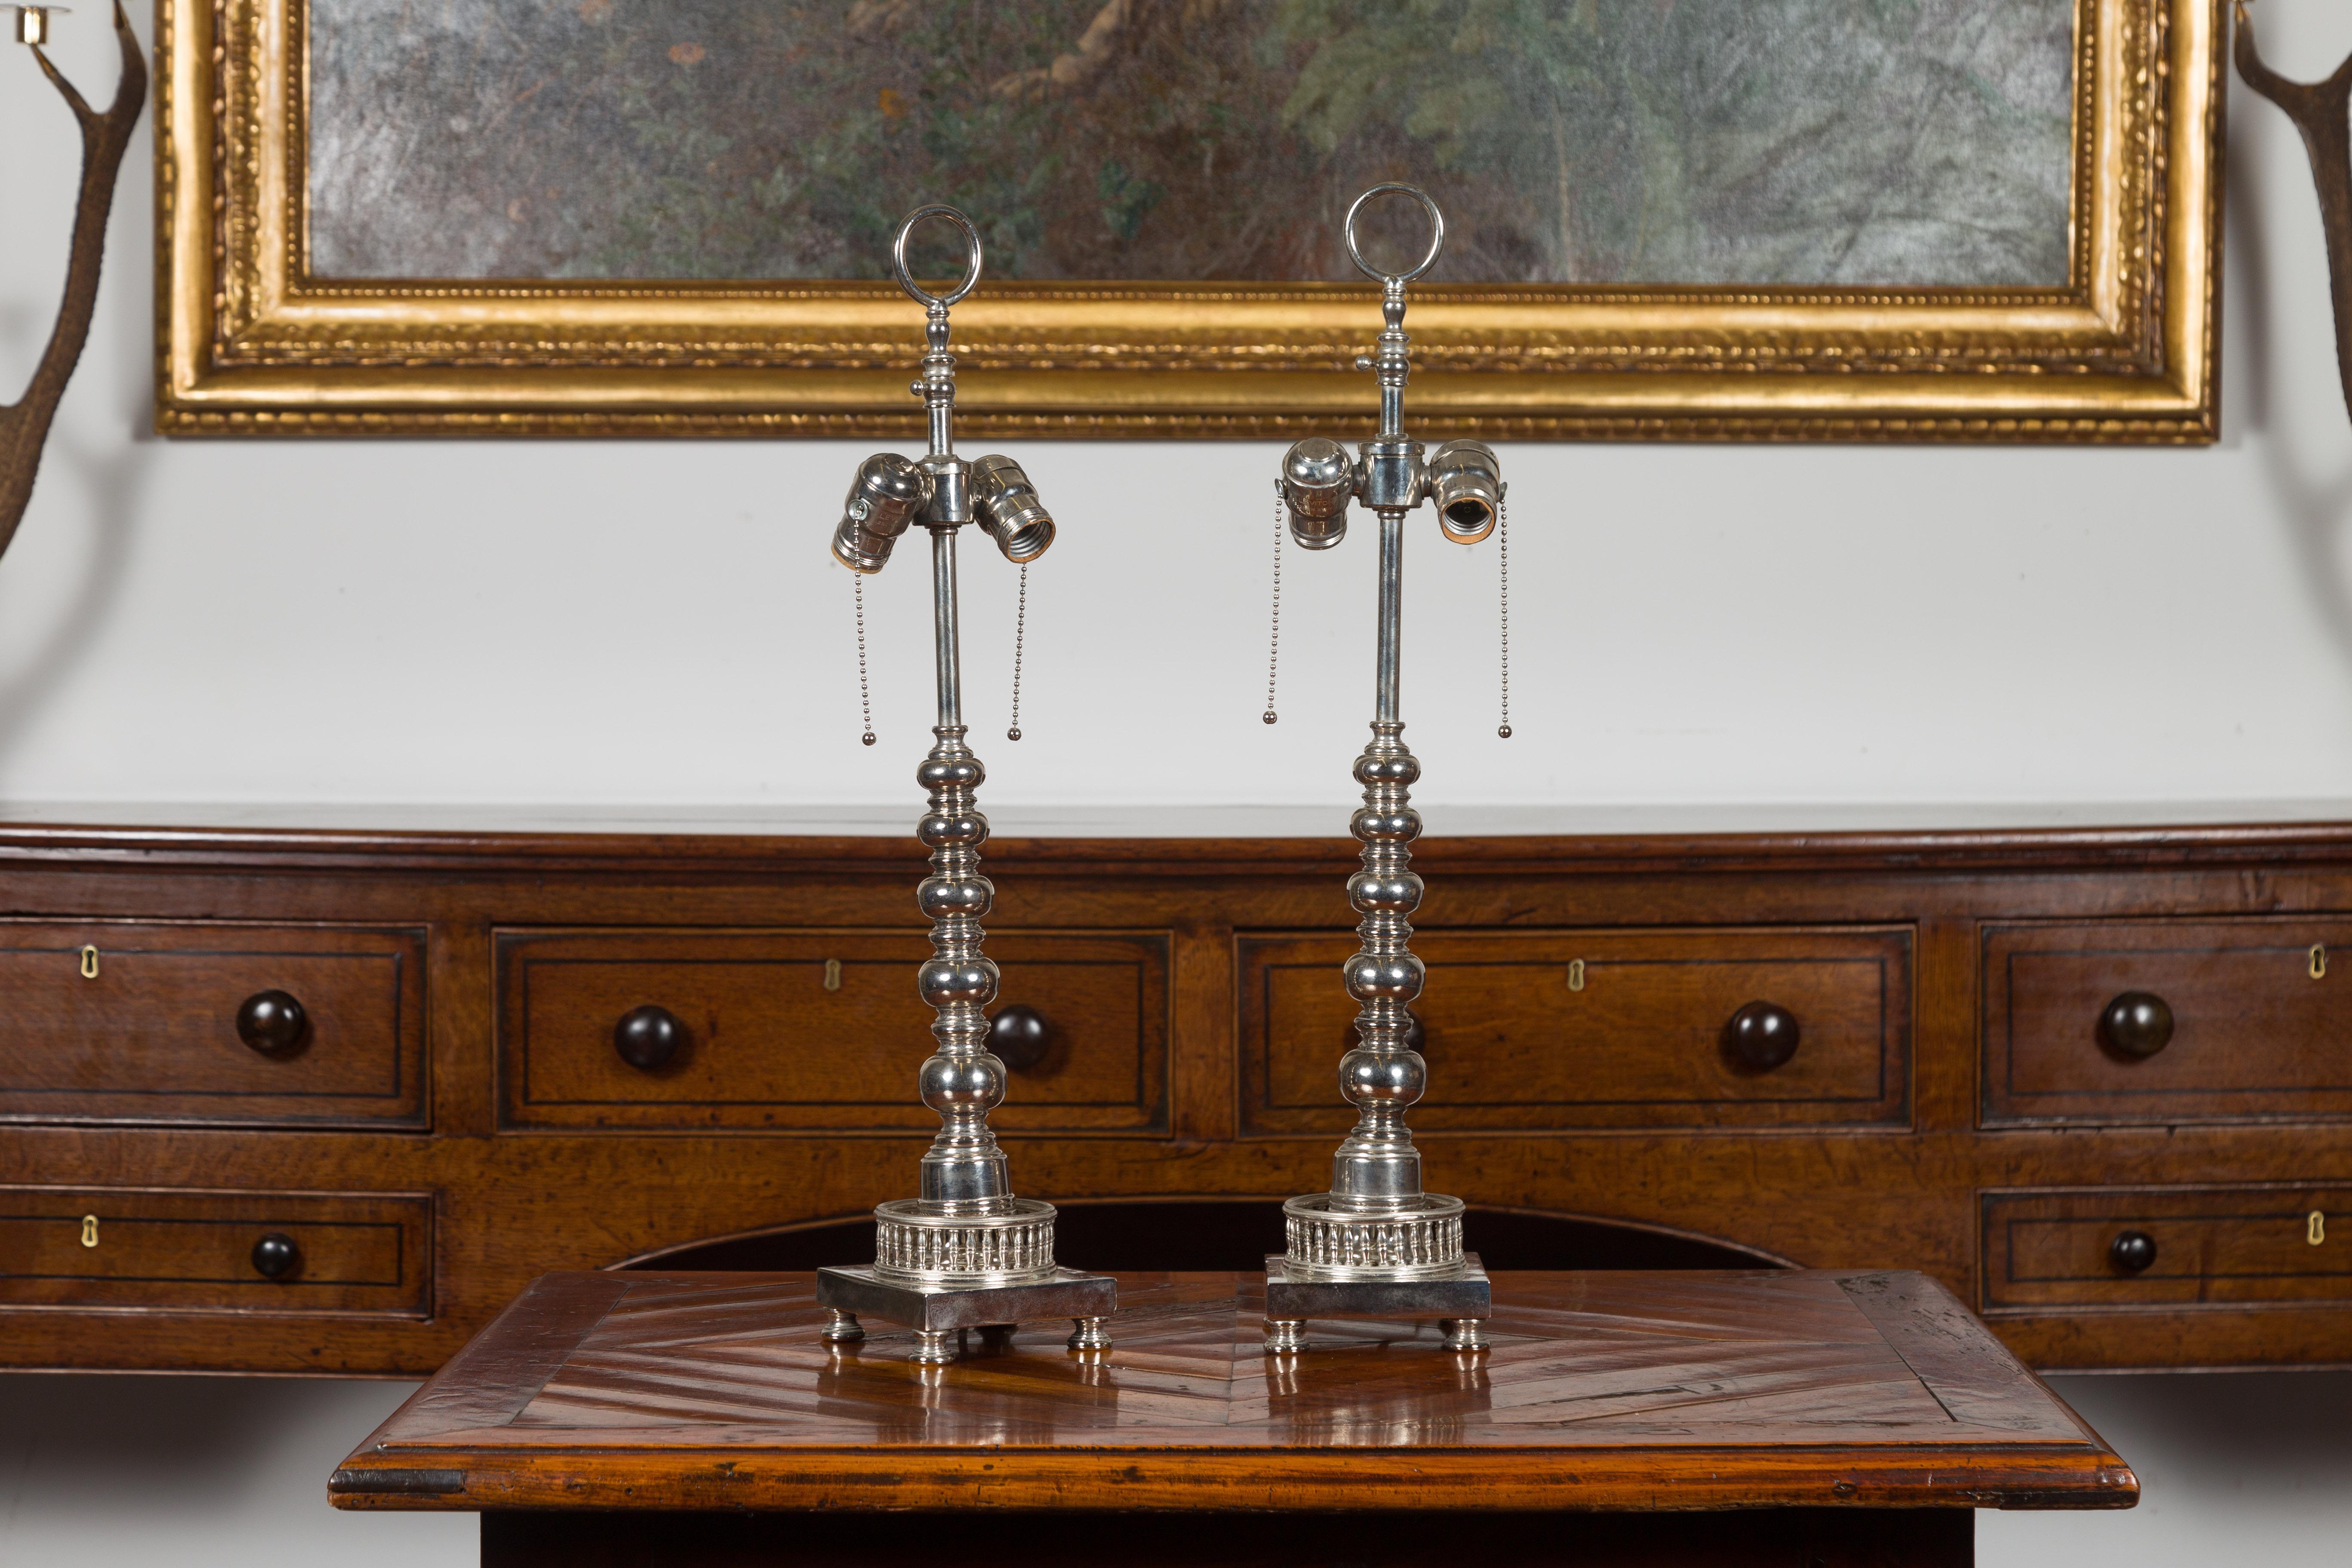 Une paire de lampes de table à deux lumières en métal argenté de style anglais, datant du milieu du 20e siècle, avec des accents de bobine et une galerie percée. Créée en Angleterre au cours du deuxième quart du XXe siècle, cette paire de lampes de